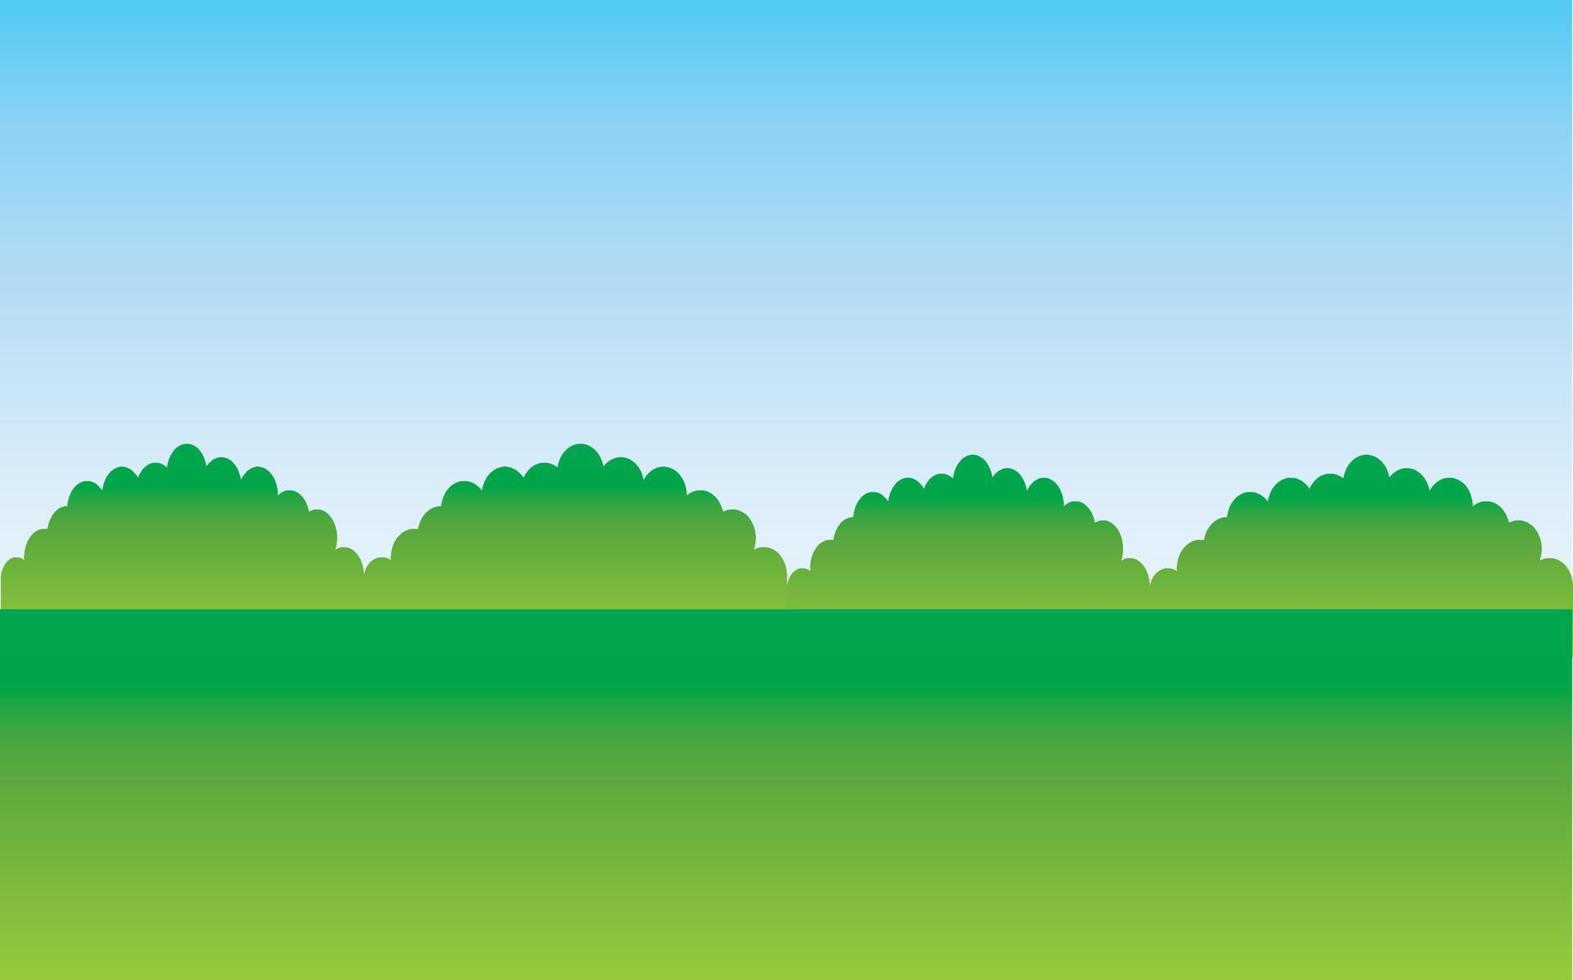 paesaggio verde della natura e cielo blu.campo e prato.colline ed erba.parco o all'aperto.campi da golf.sfondo estivo.giardino o tappeto erboso.fattoria e paesaggio di campagna.illustrazione di vettore del fumetto.carta da parati.